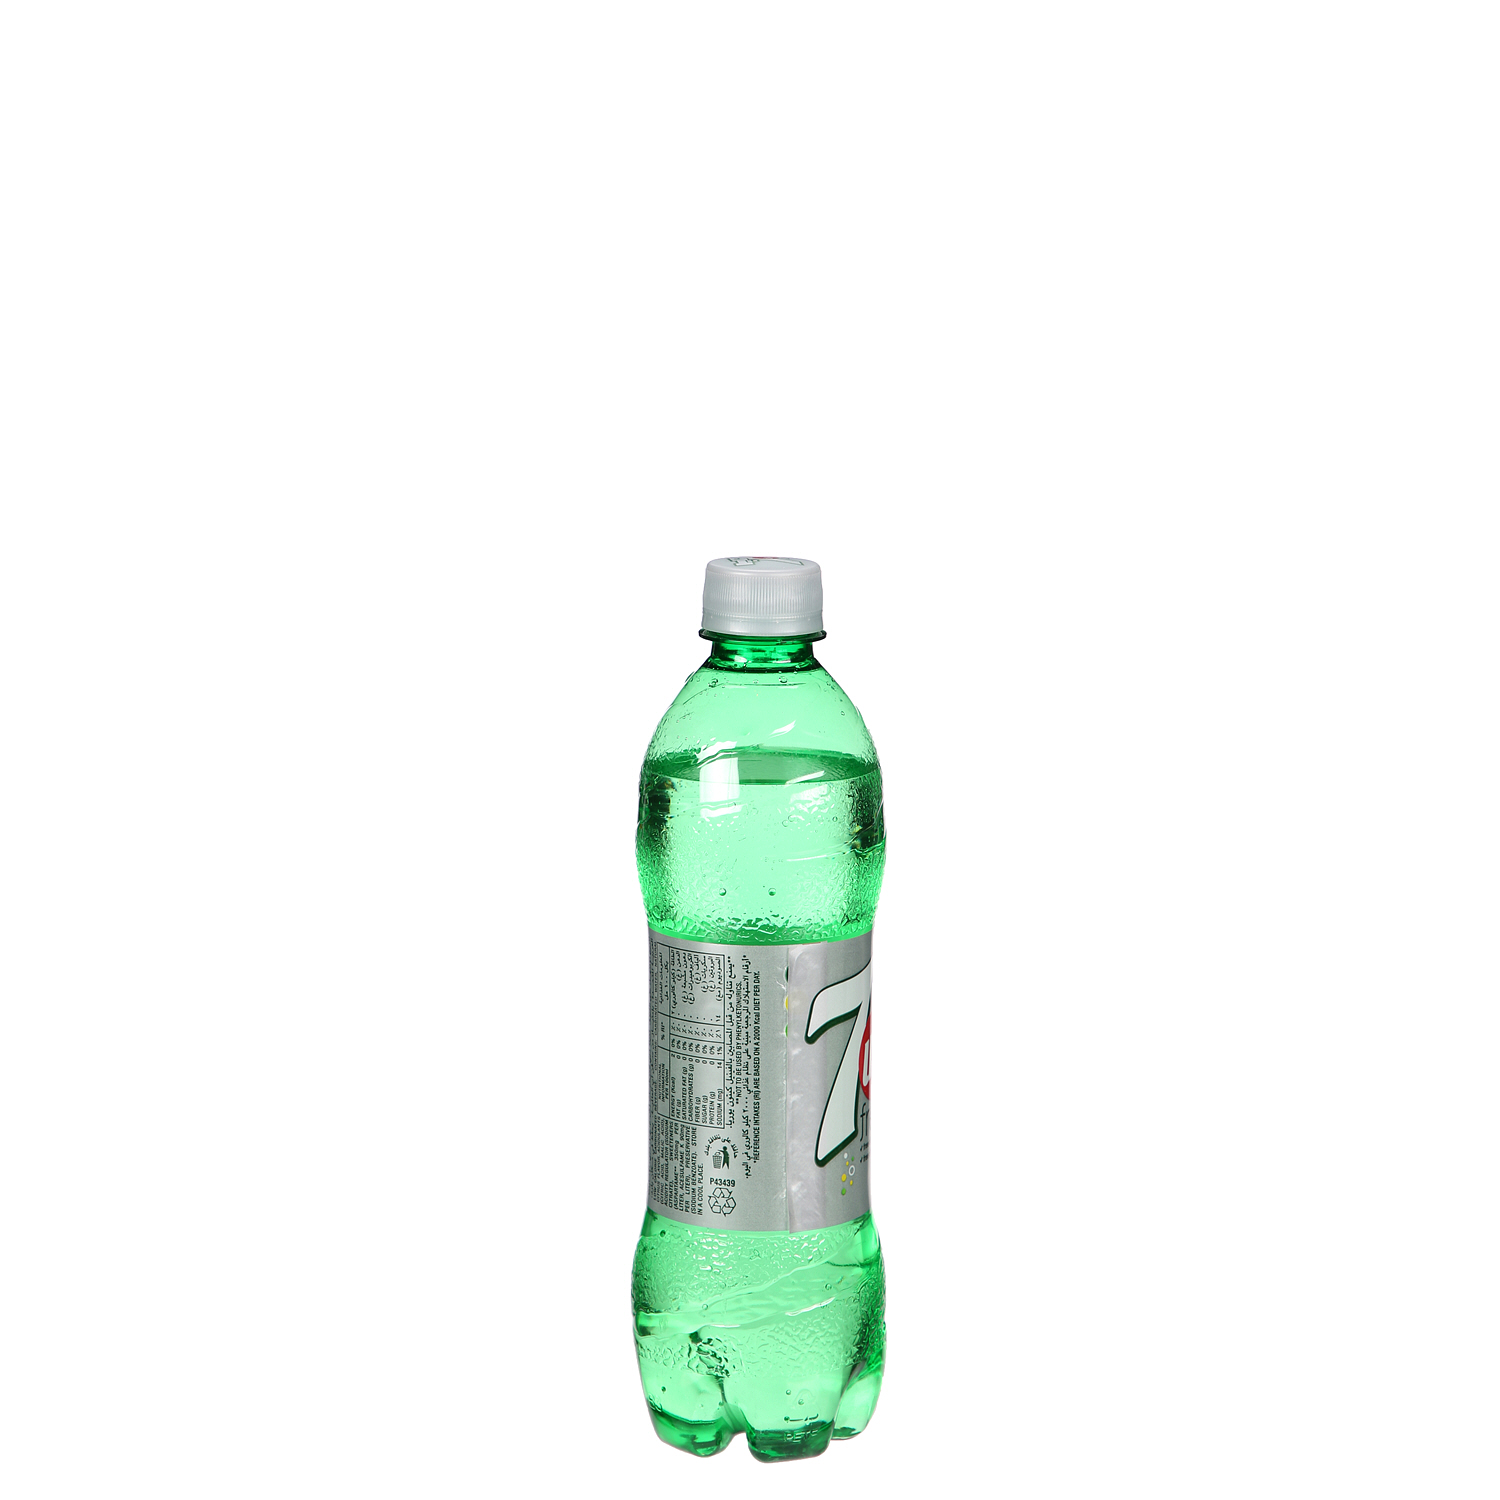 7UP Diet Plastic Bottle 500 ml